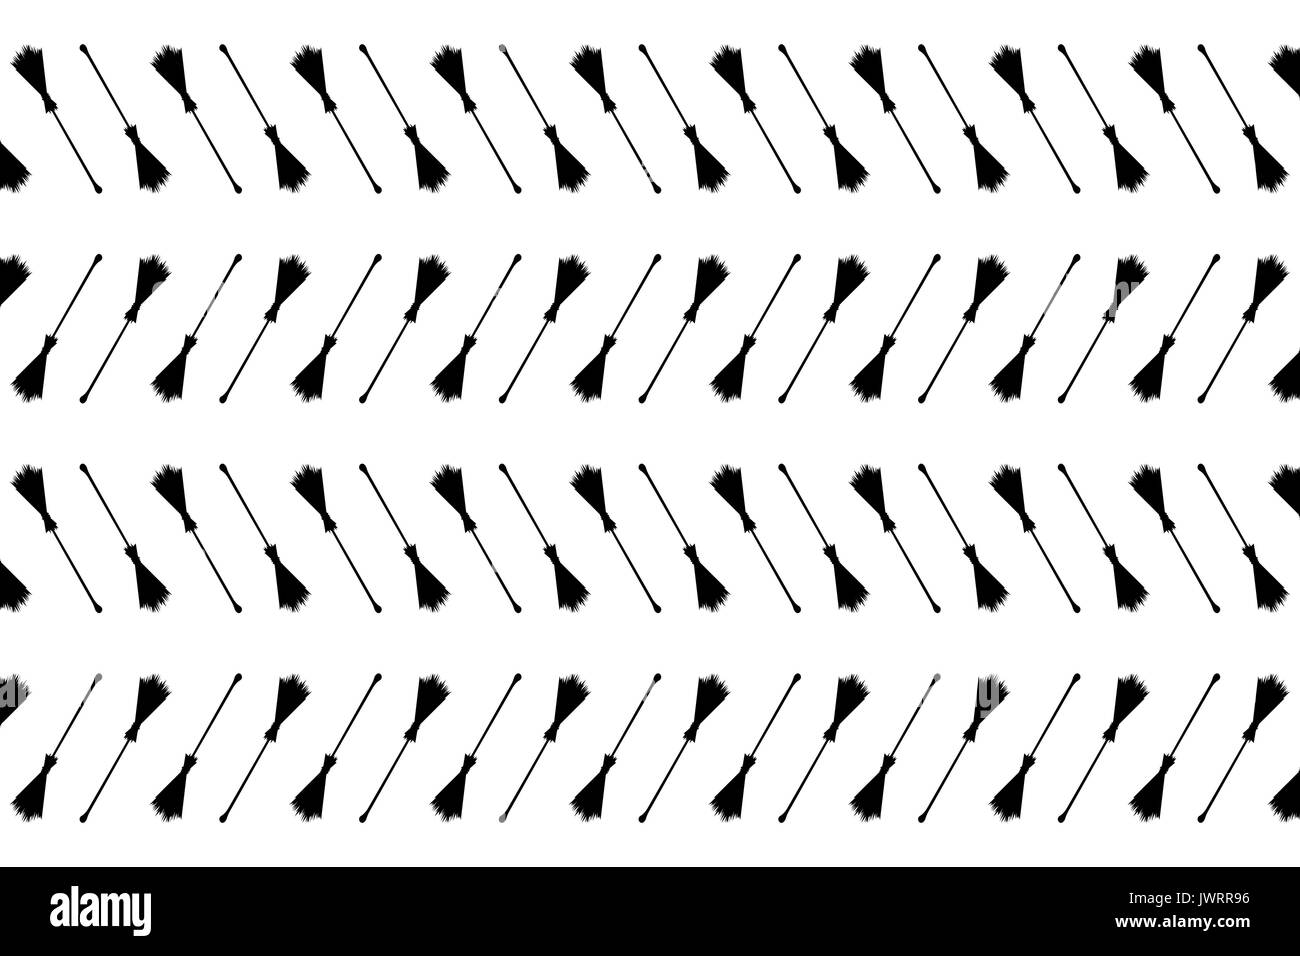 Besen schwarz auf weißem Hintergrund - vector Pattern, Halloween hexen Besen-vector Pattern, Hexen Besen Muster Stock Vektor